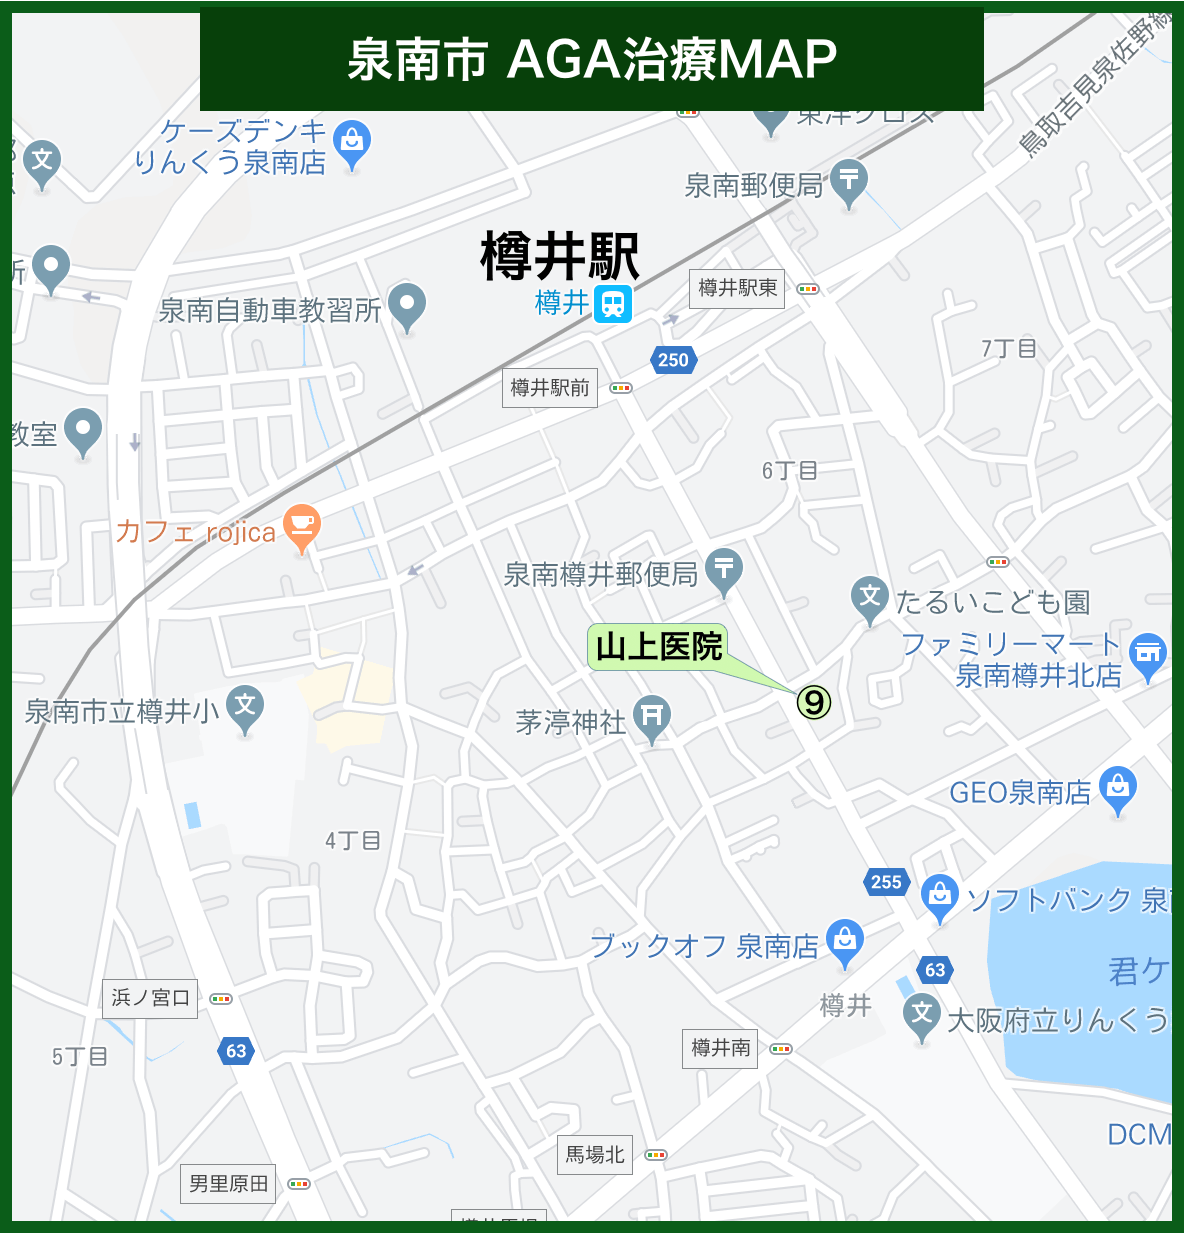 泉南市 AGA治療MAP